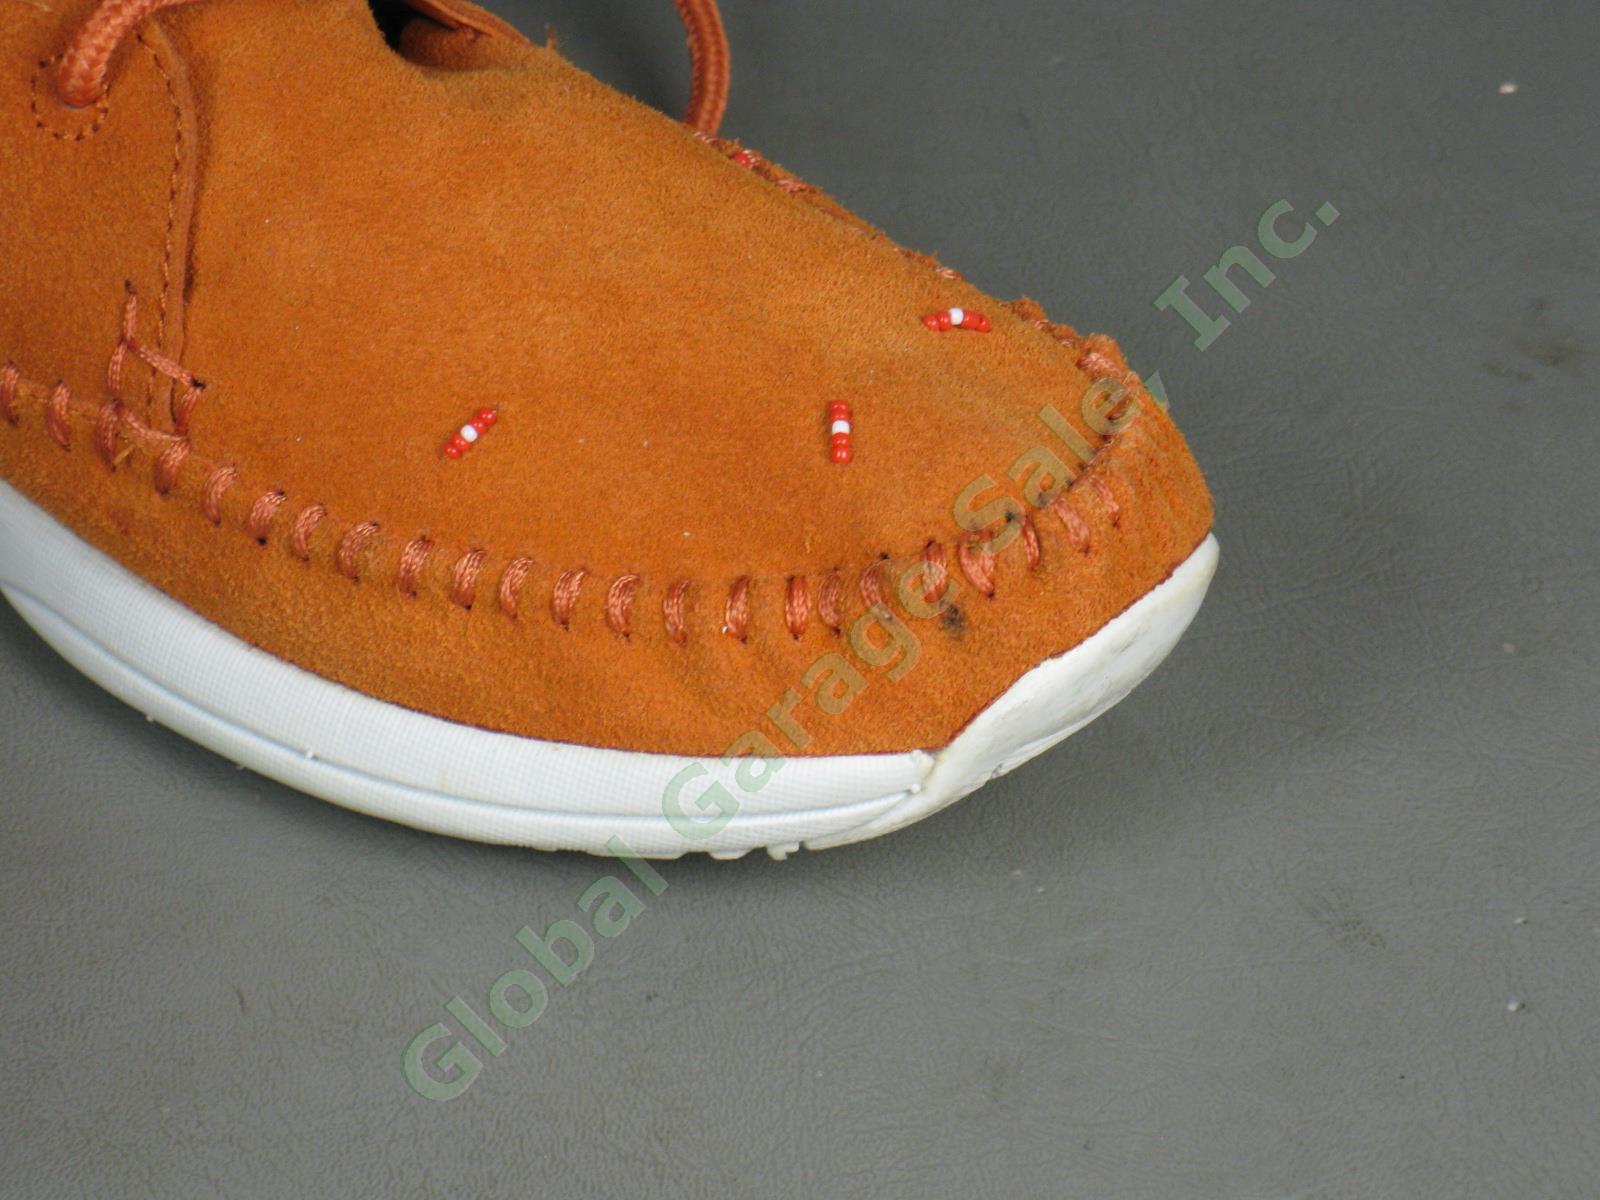 Visvim Lhamo Mens Brown Suede Leather Shoes Folk FBT Size Euro 45 US 11.5 12